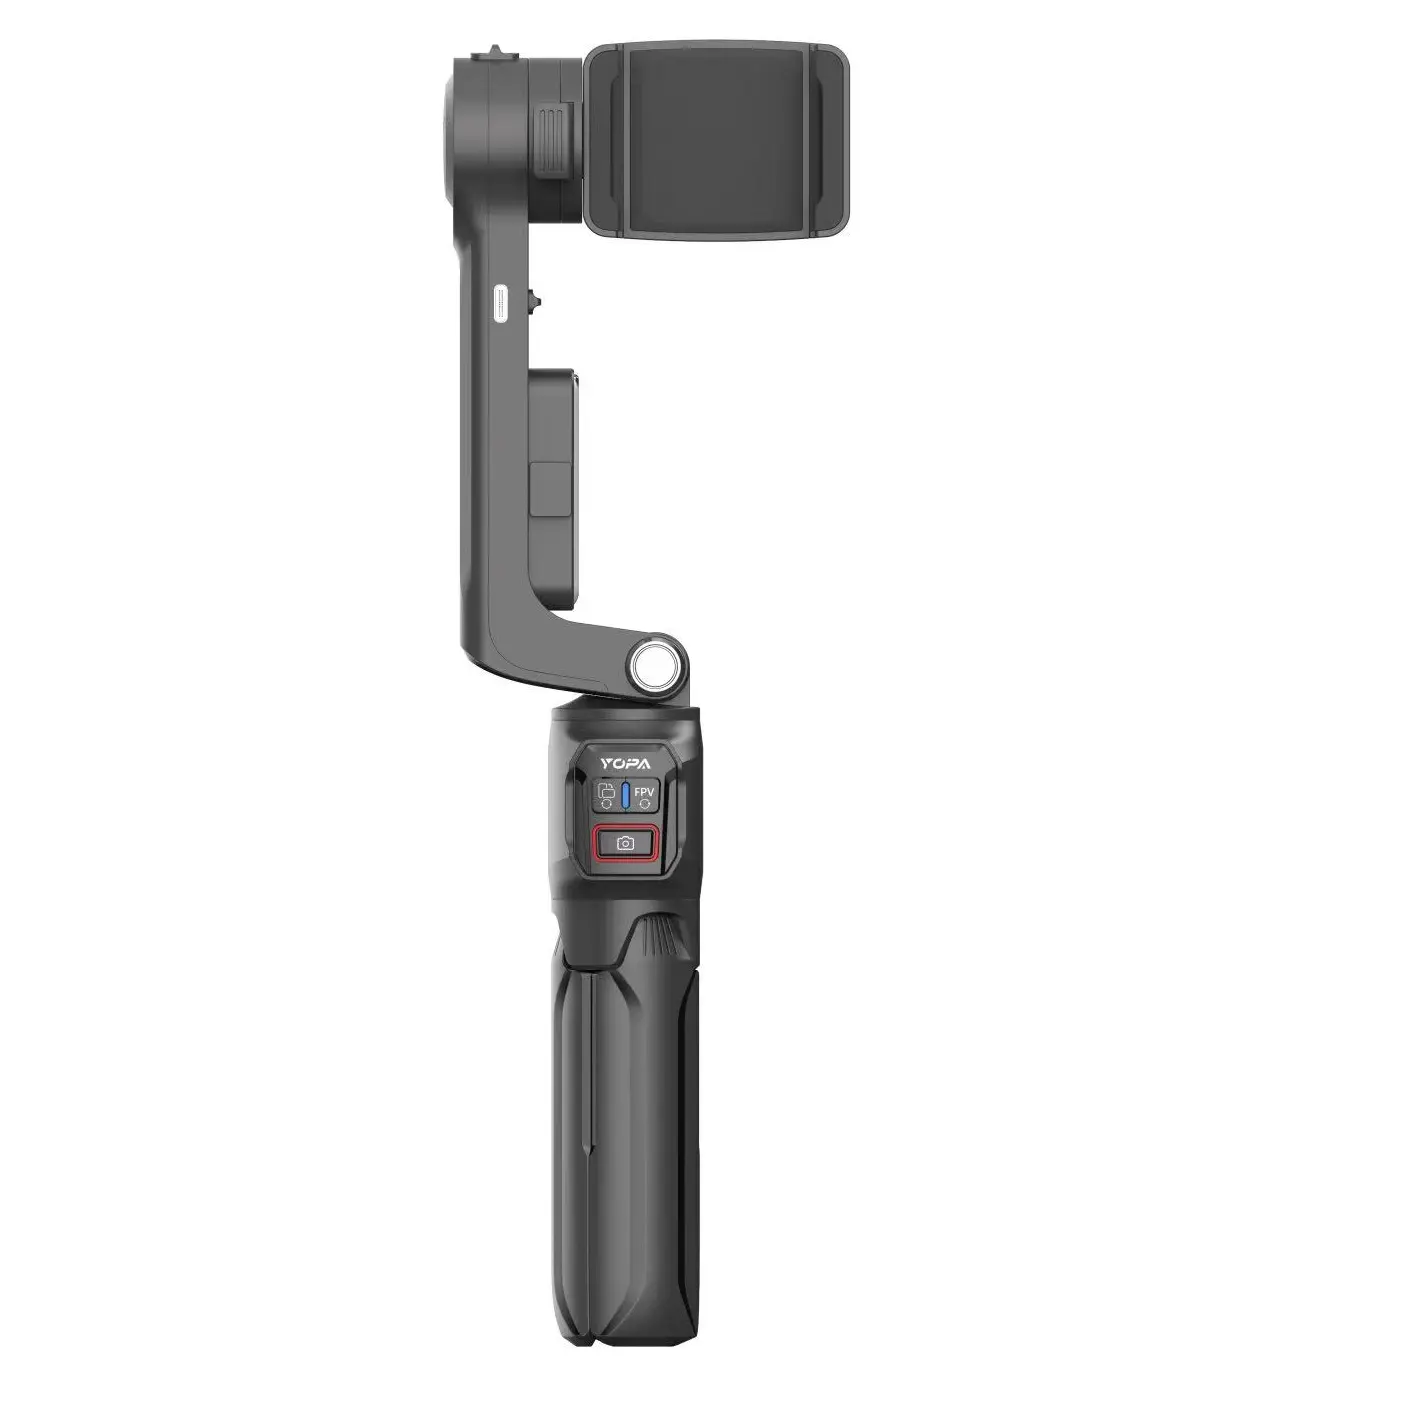 Le cardan à axe unique prend en charge la fonction de perche de selfie avec trépied et extension de 396mm